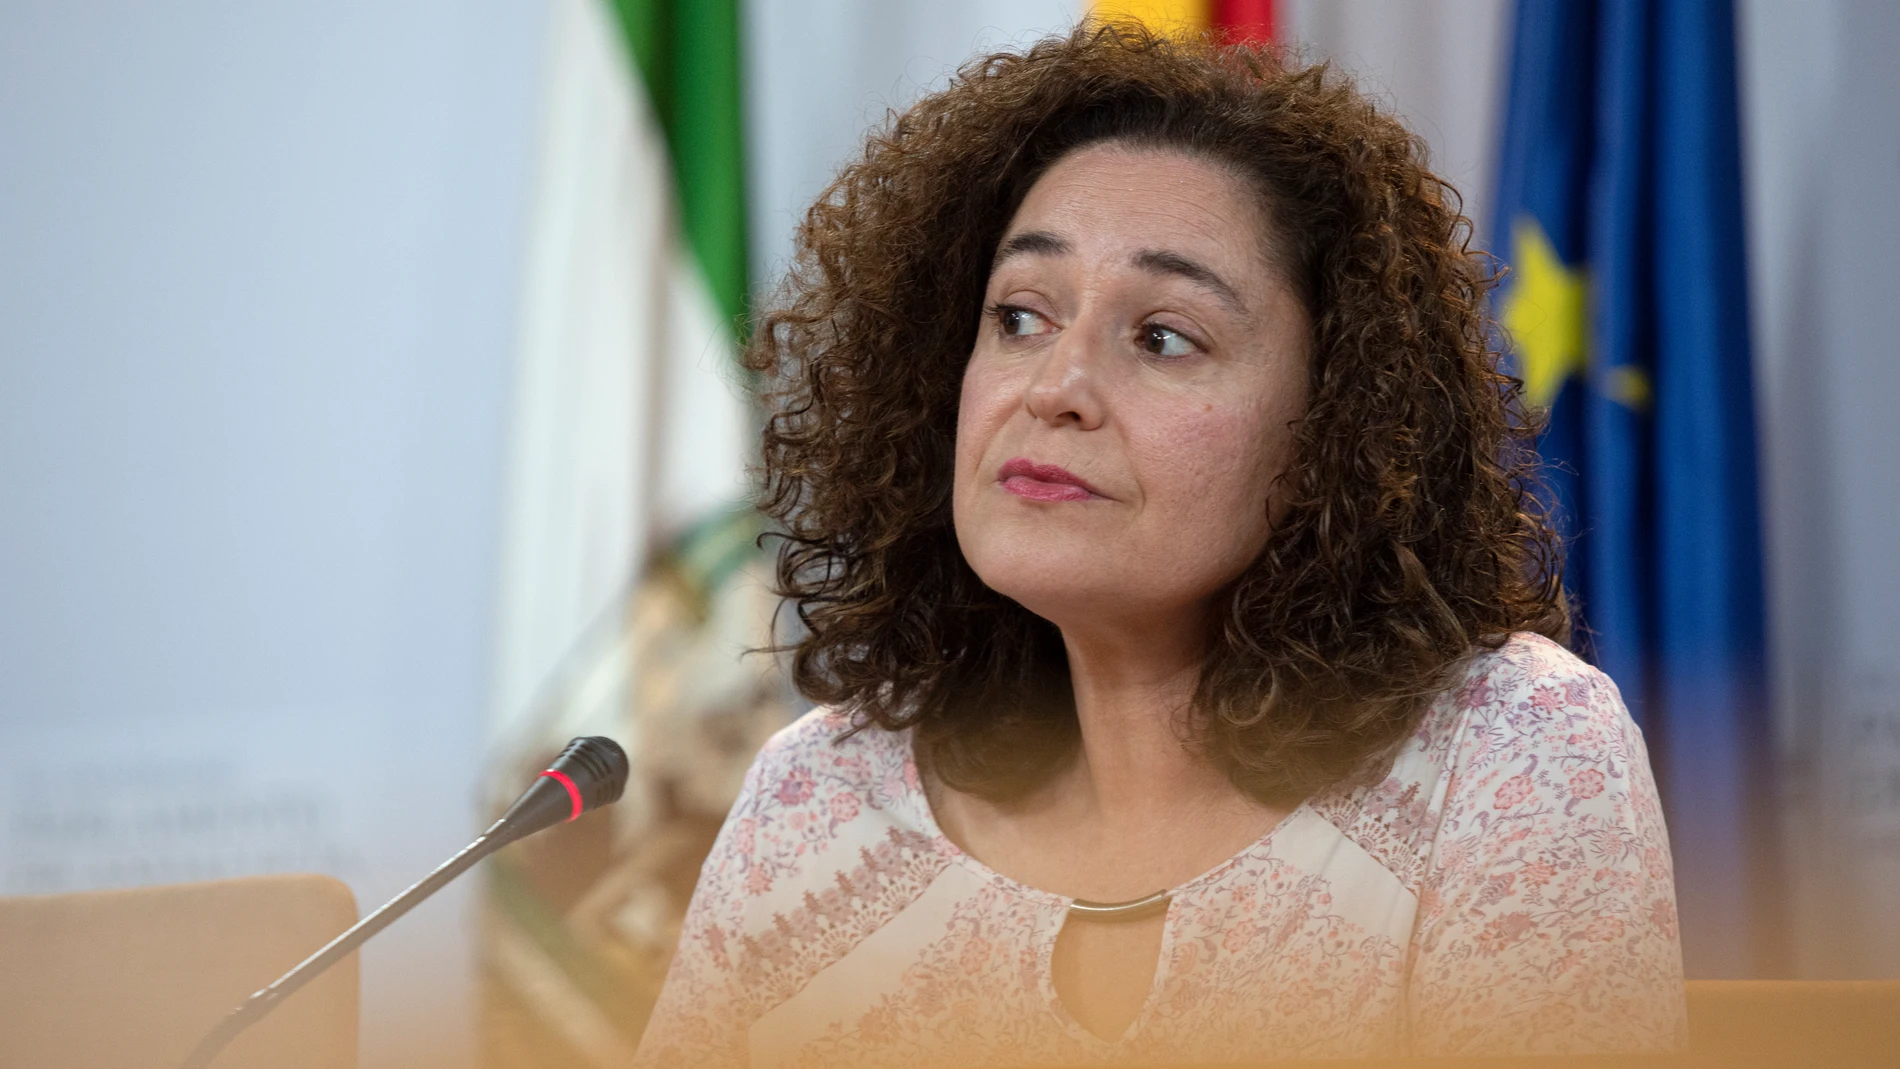 La portavoz del grupo parlamentario Por Andalucía, Inmaculada Nieto. María José López / Europa Press